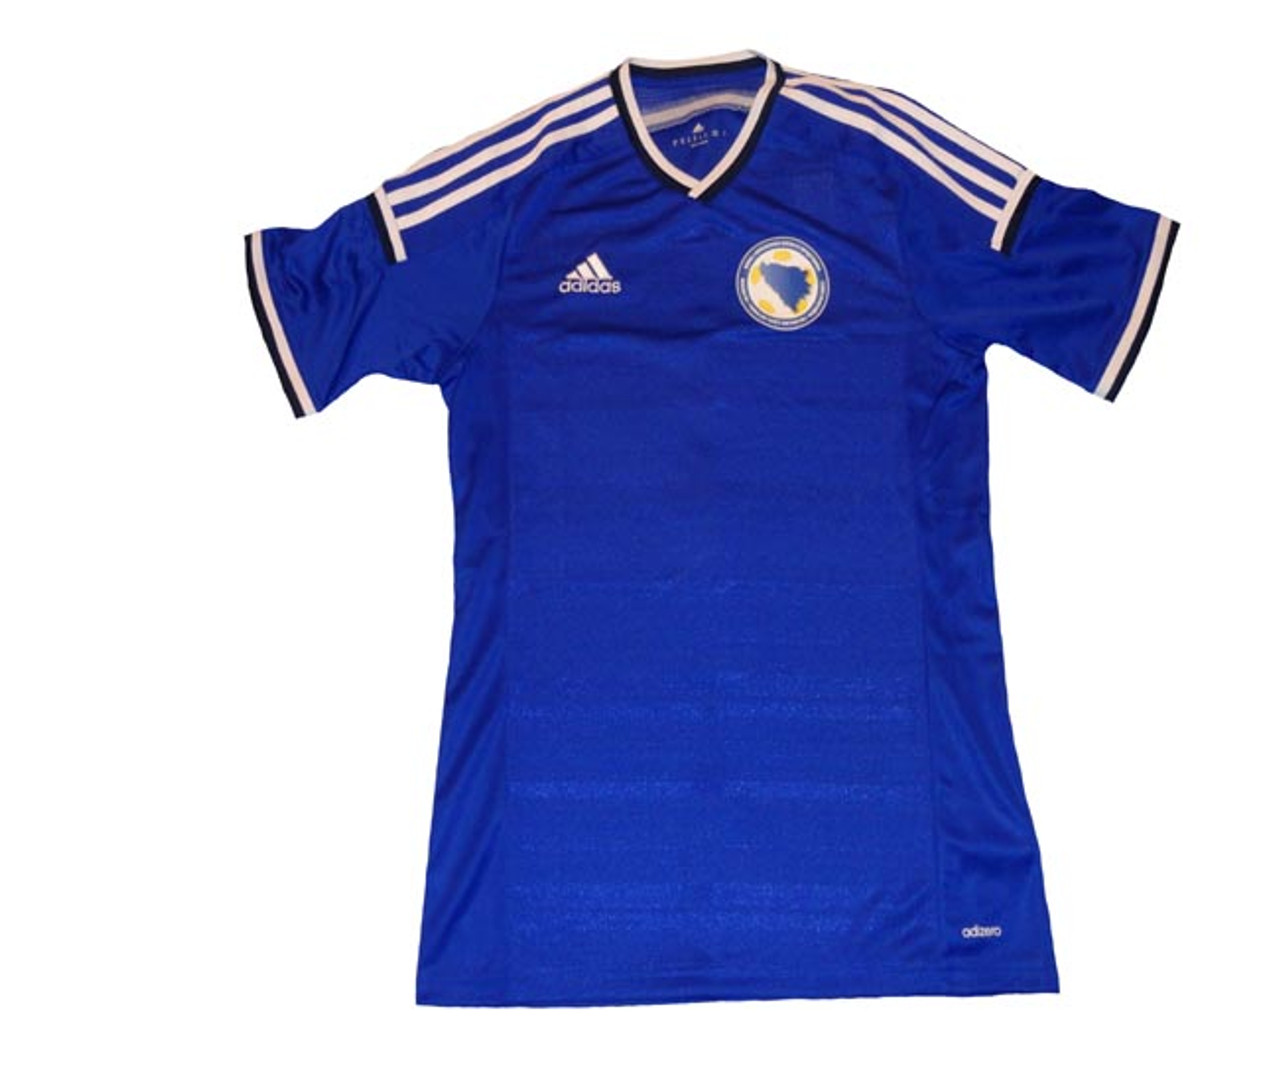 bosnia soccer jersey